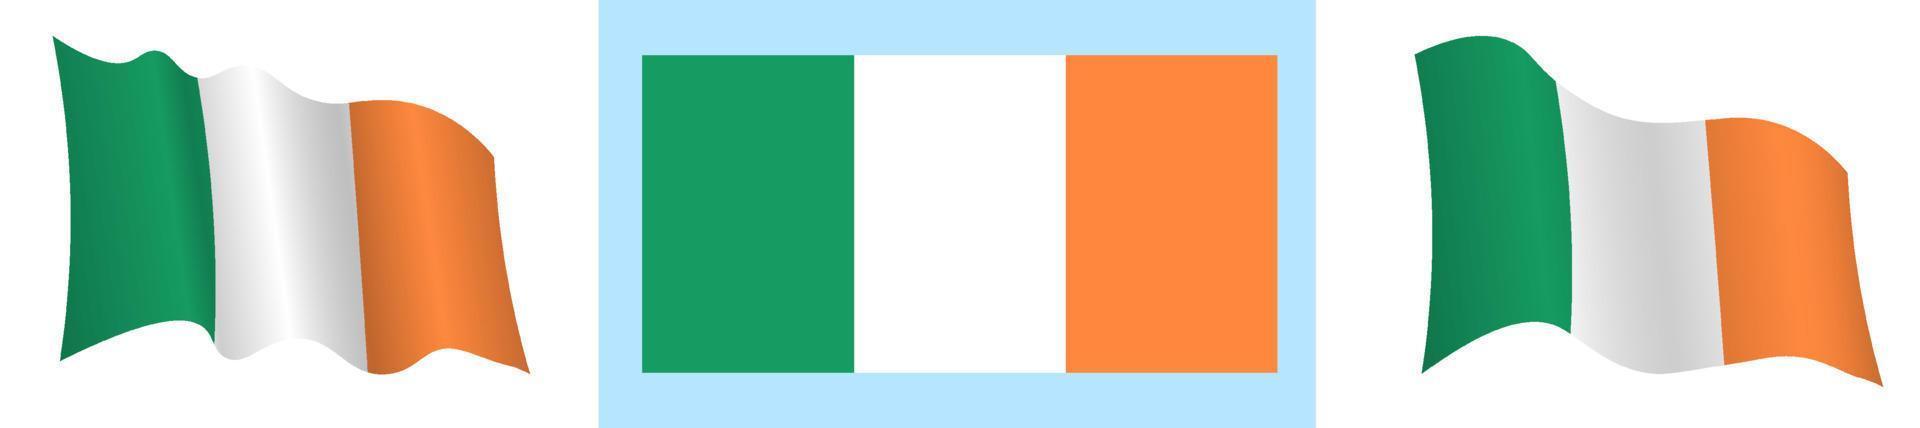 bandera de irlanda en posición estática y en movimiento, desarrollándose en el viento en colores y tamaños exactos, sobre fondo blanco vector